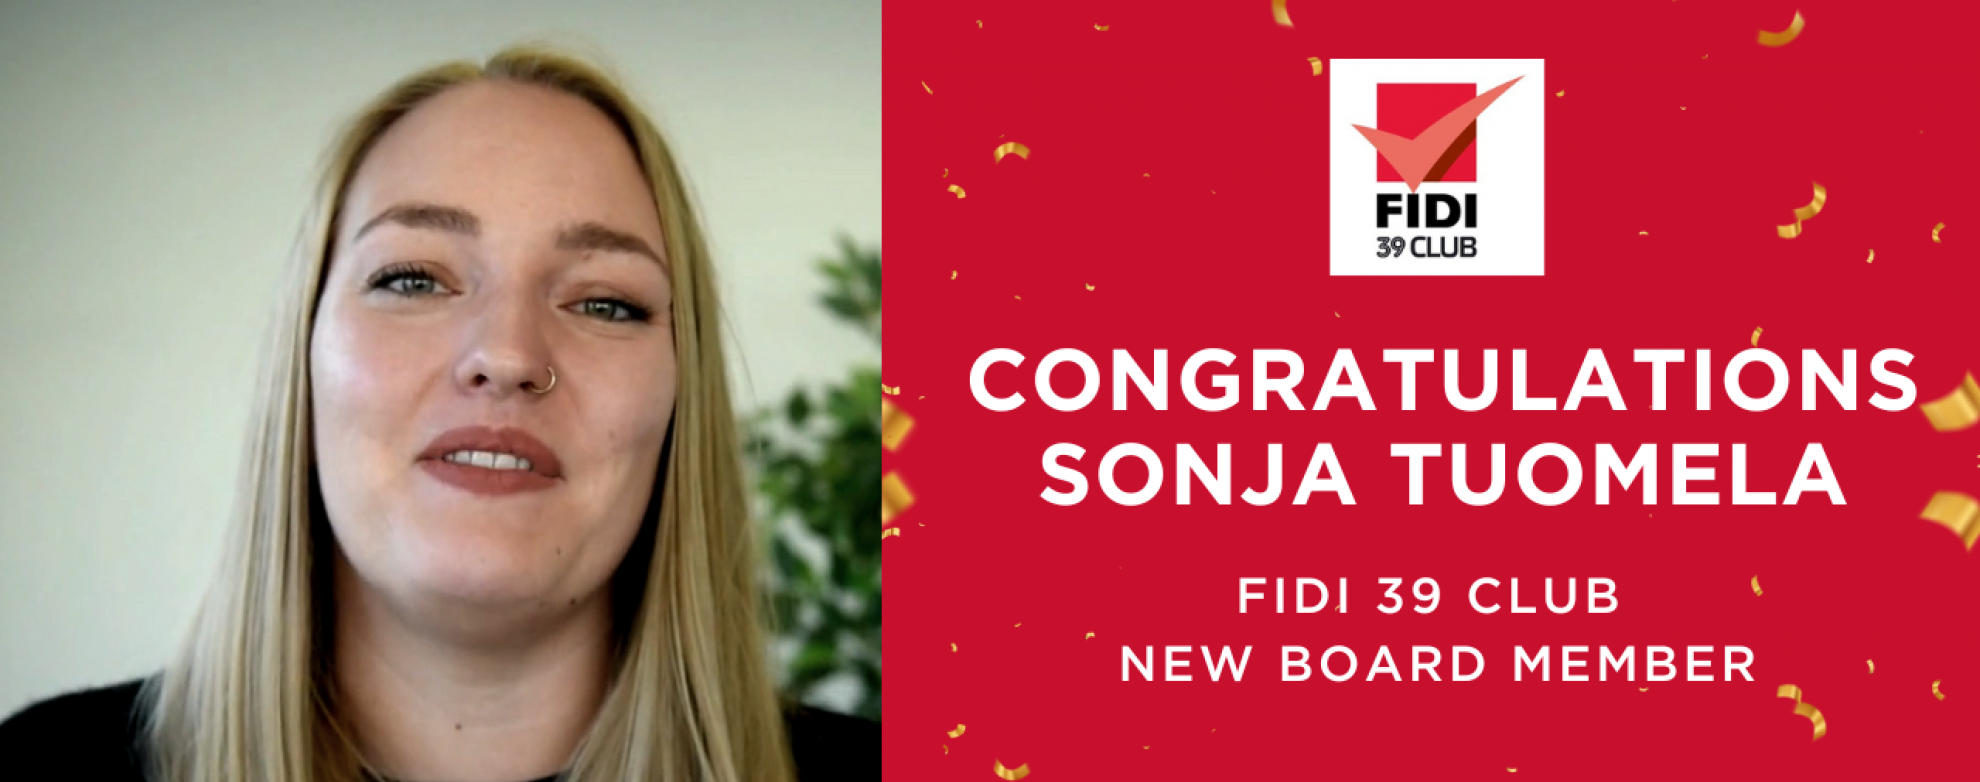 Congratulations to the new FIDI 39 Club Board member!